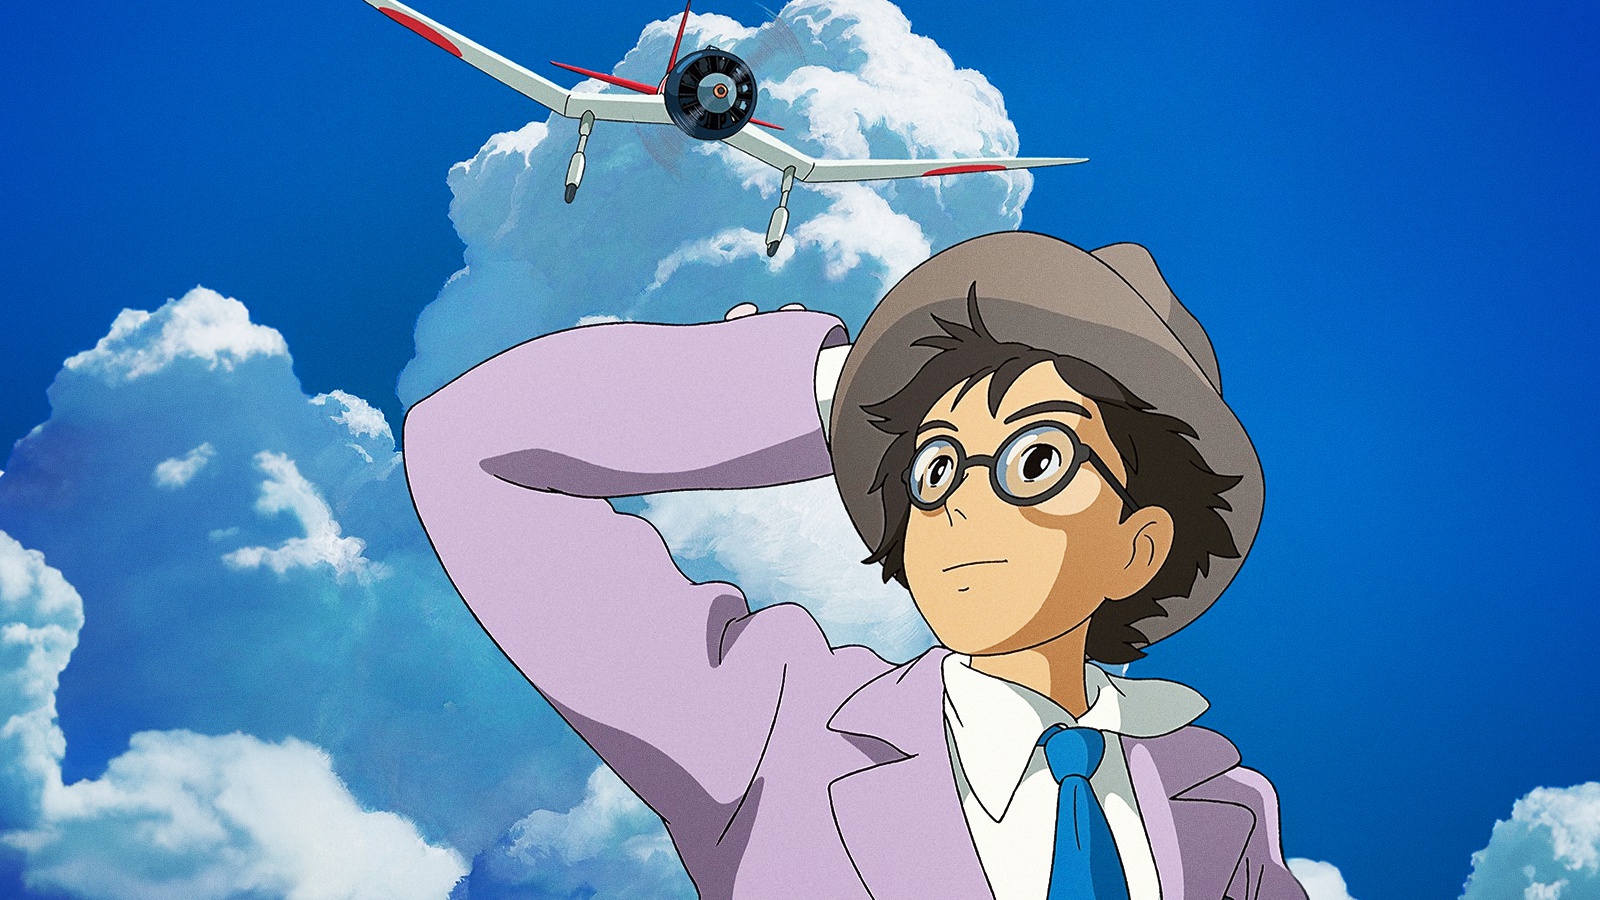 Si alza il vento: il sogno “splendido e maledetto” di Hayao Miyazaki